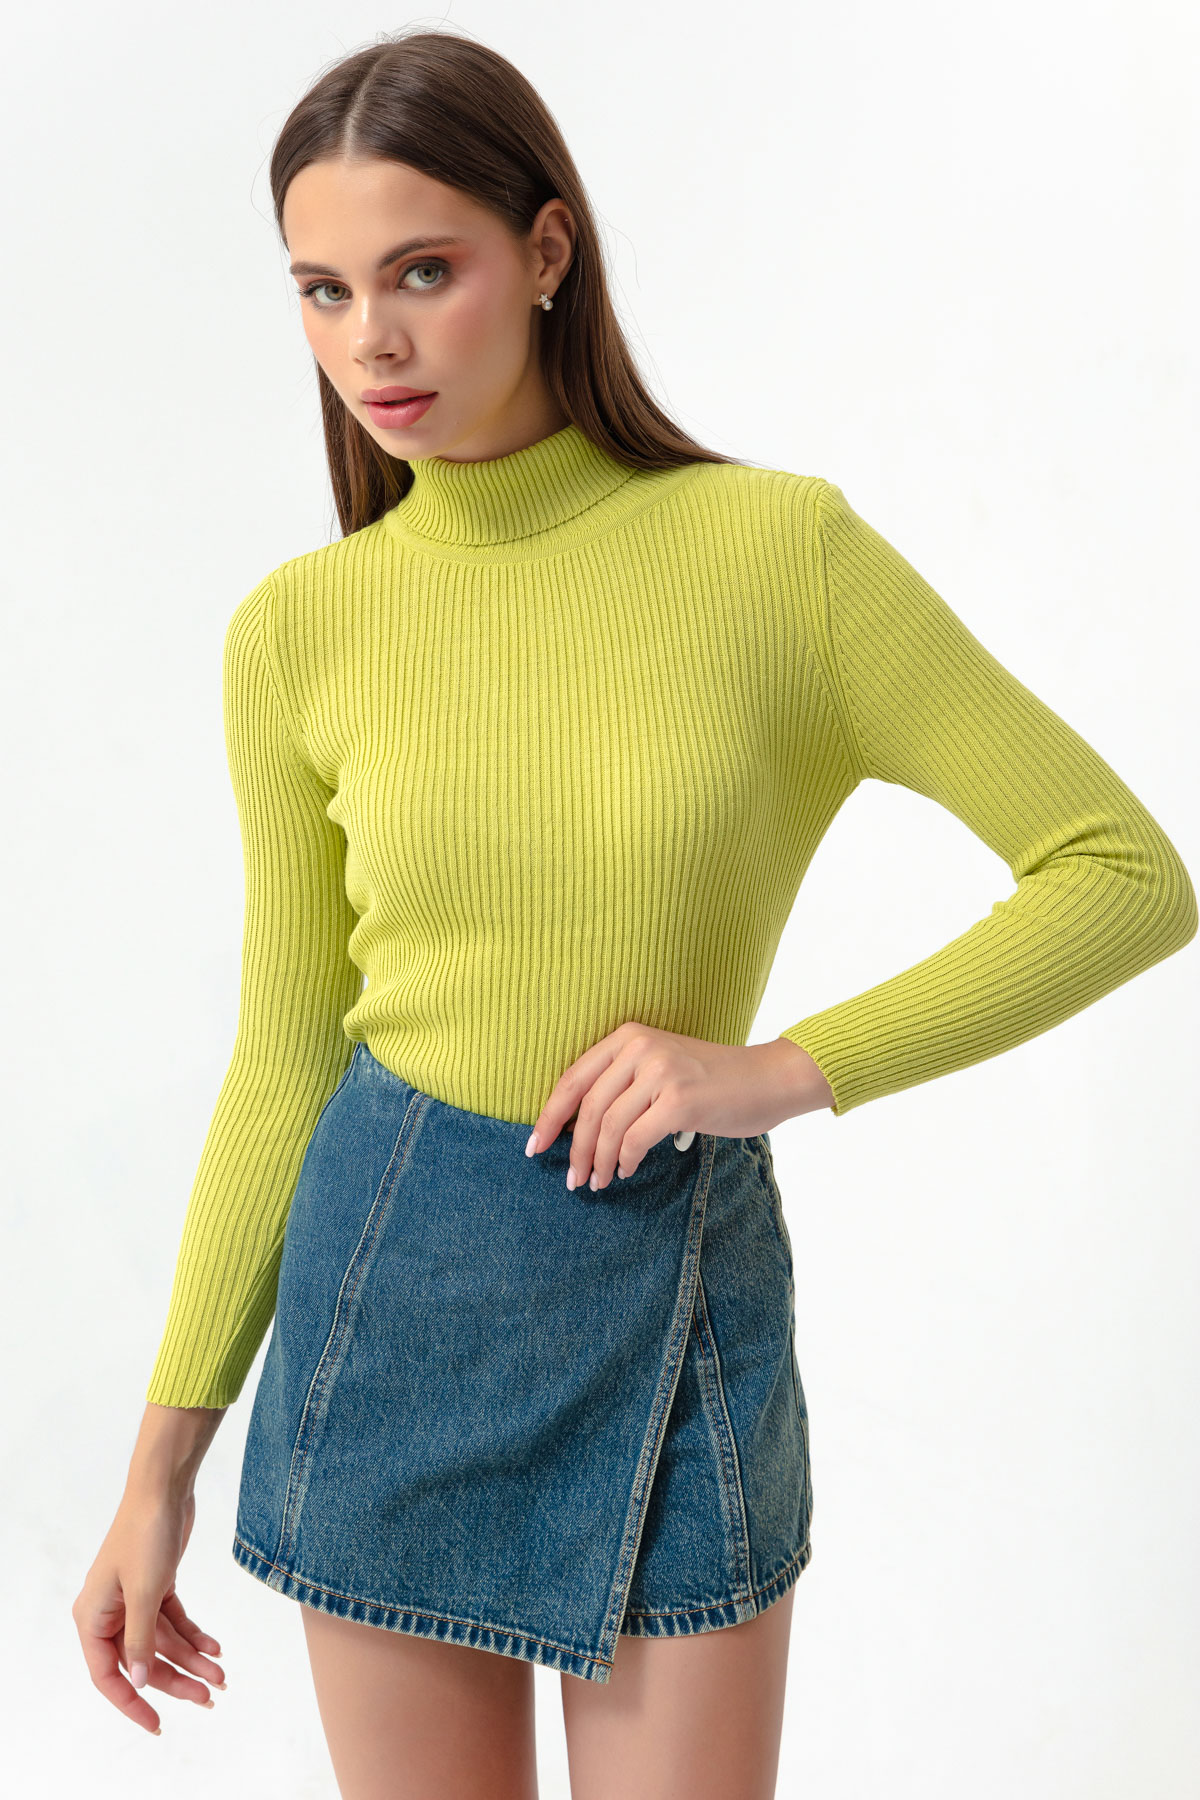 Women's Pistachio Green Turtleneck Knitwear Sweater